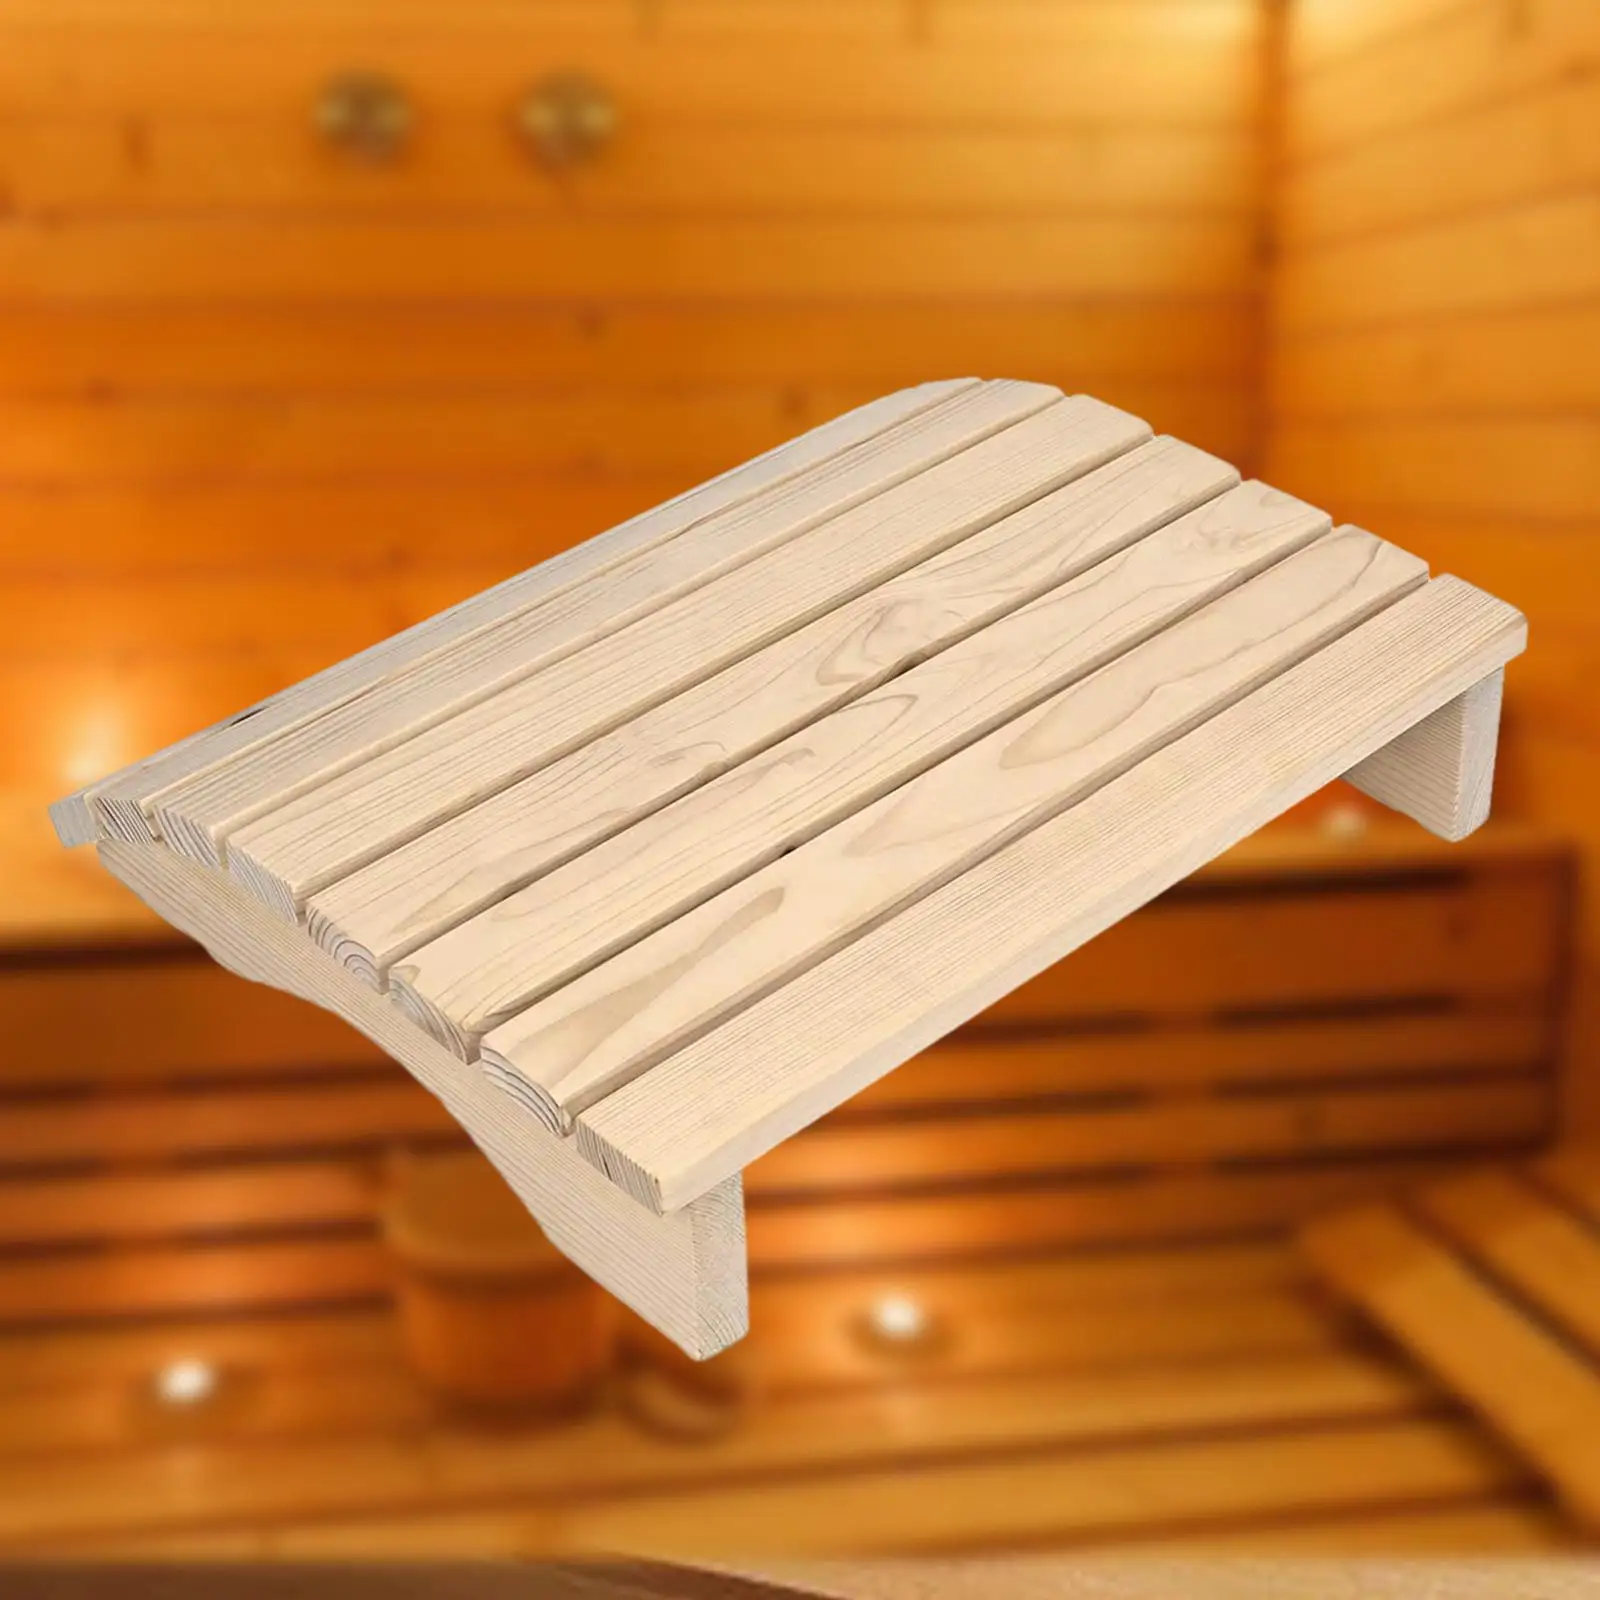 Sauna Backrest Household Ergonomic Backrest Anti Slip Wooden Sauna Headrest Sauna Supplies Accessories for Steam Room Sauna Room